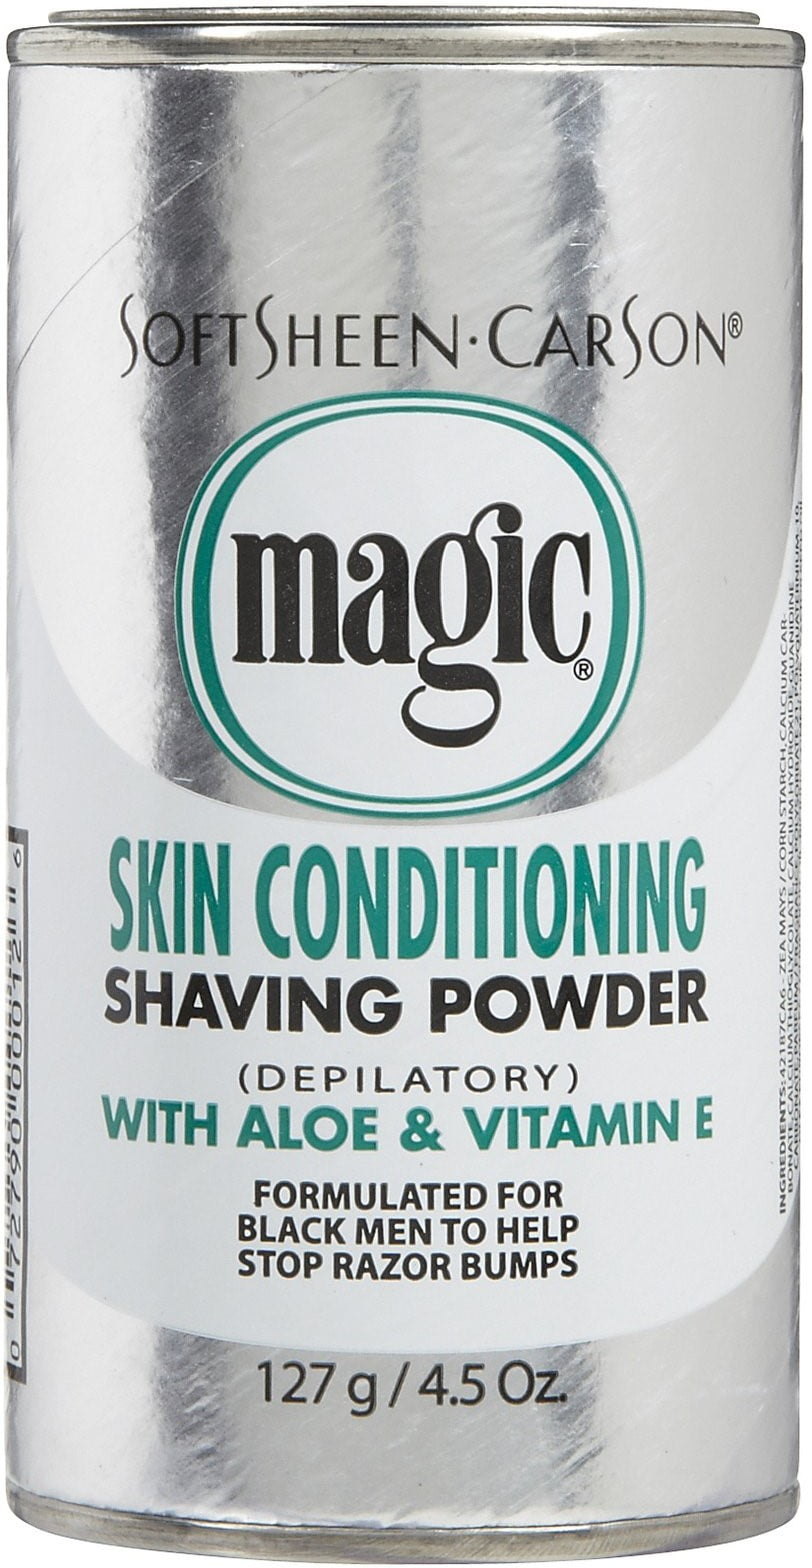 Magic Skin Conditioning Shaving Powder 4.5 oz